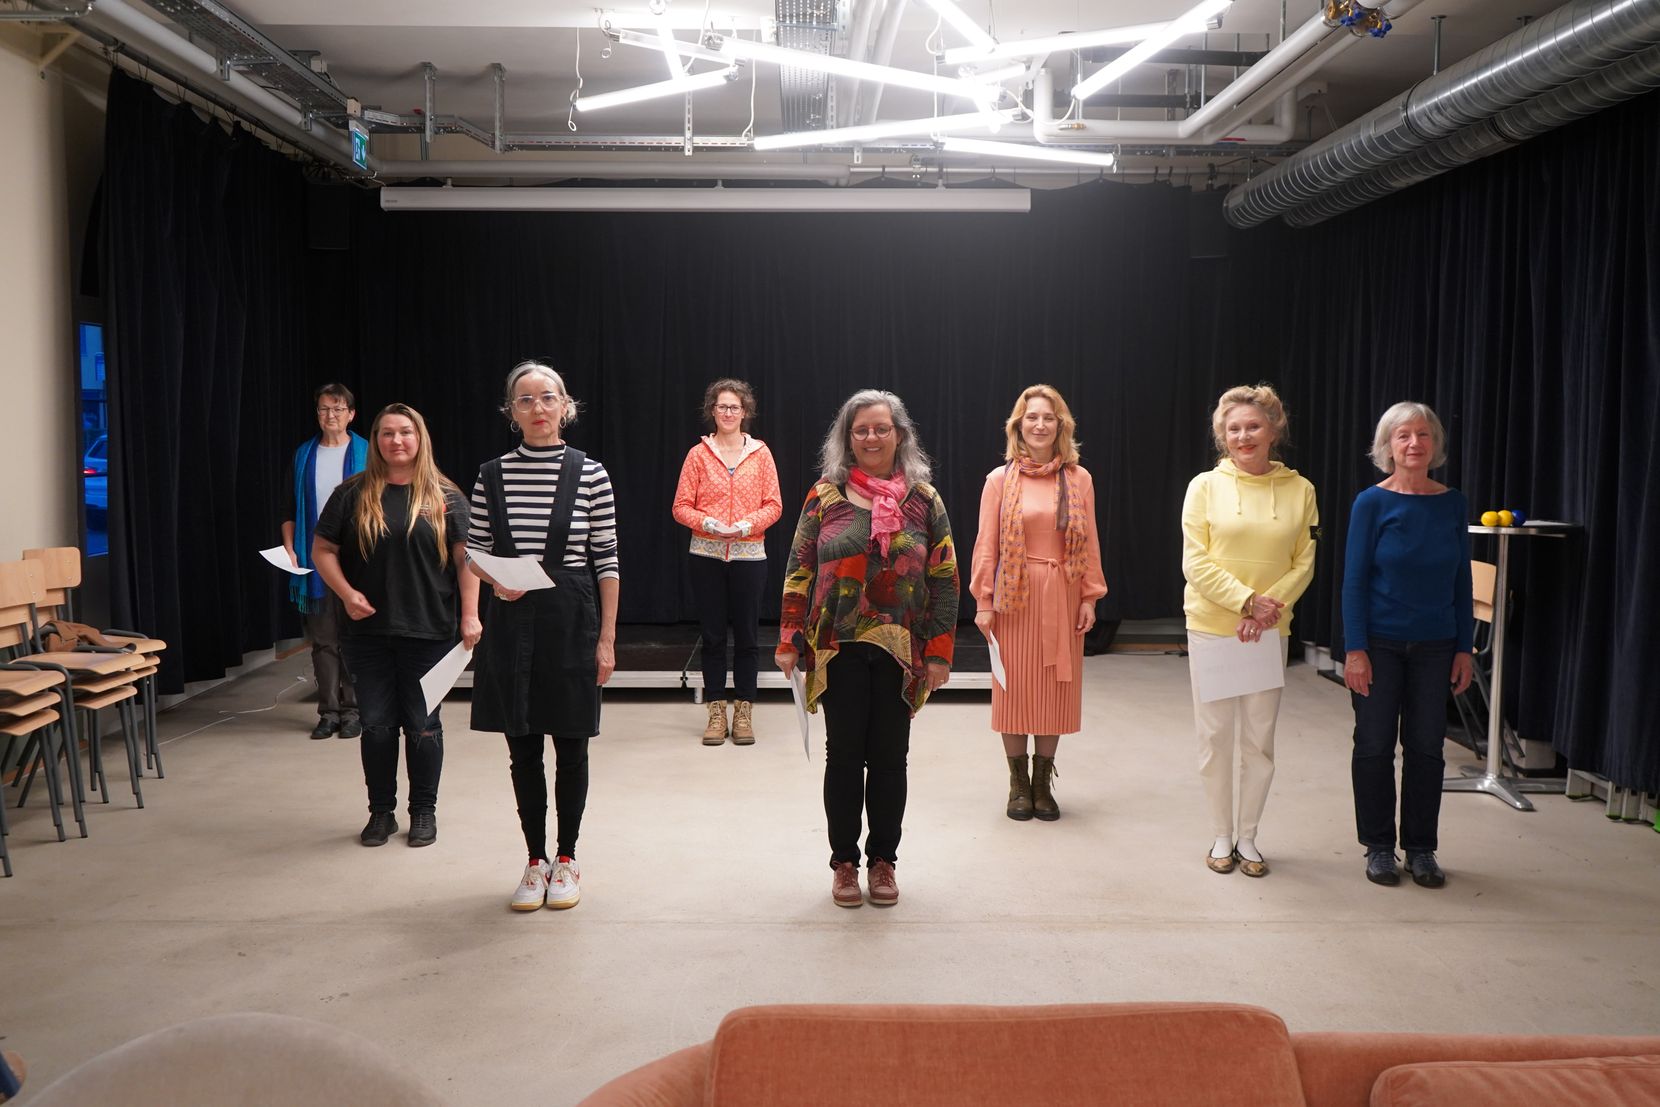 Theaterproben in einem Wetziker Lokal mit Bühne. Acht Frauen stehen nebeneinander, sie tragen bunte Kleidung.